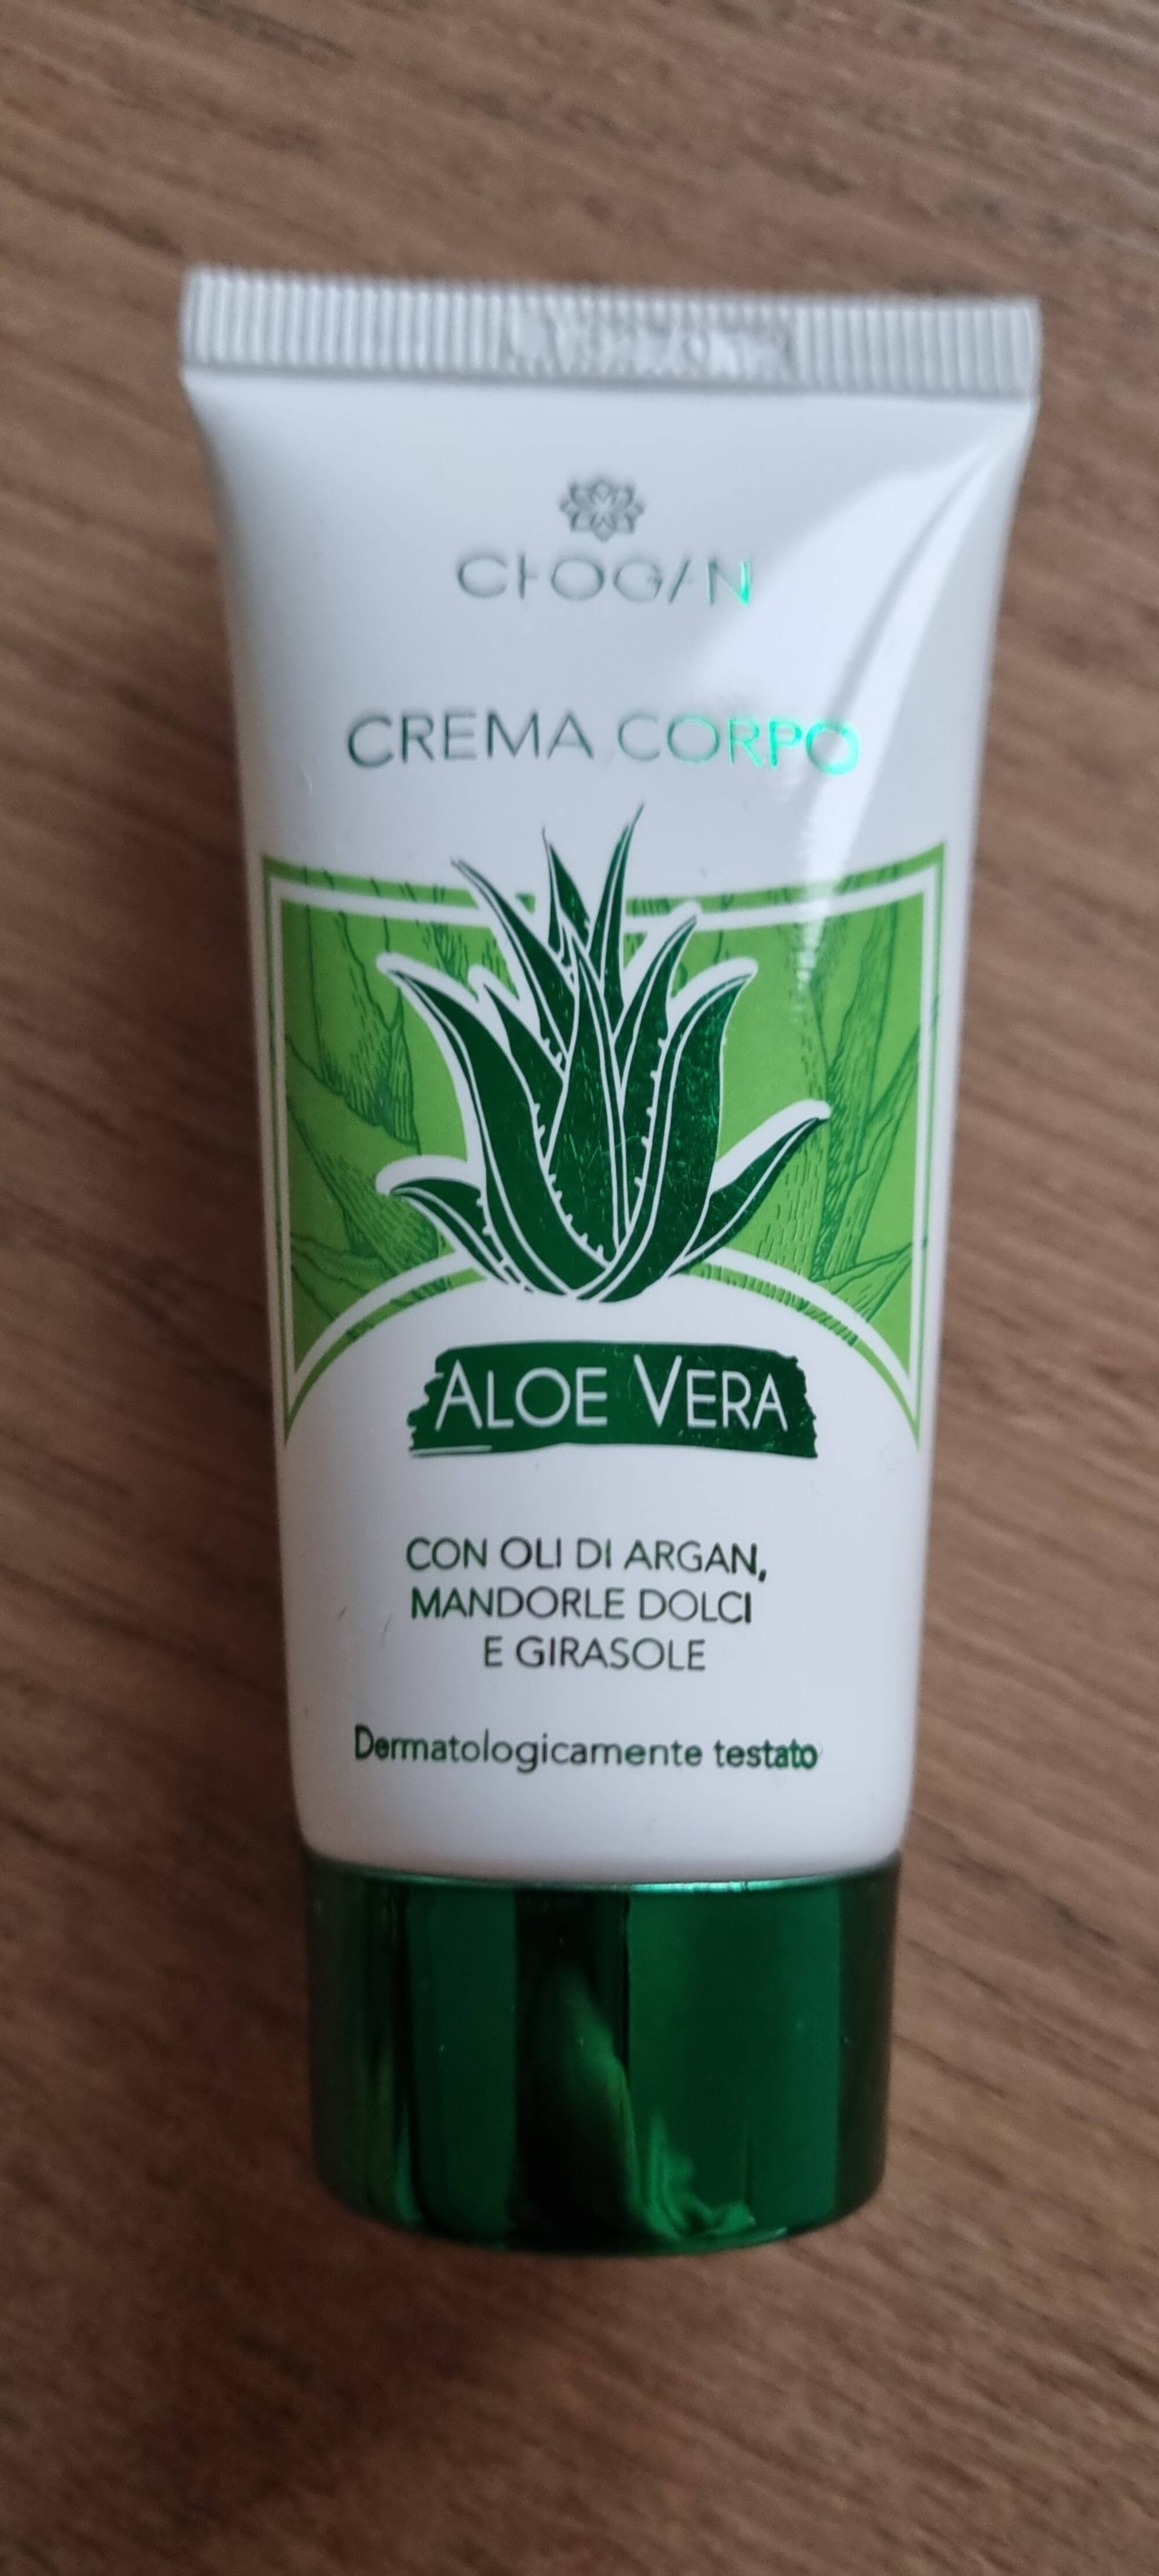 CHOGAN - Aloe vera - Crema corpo